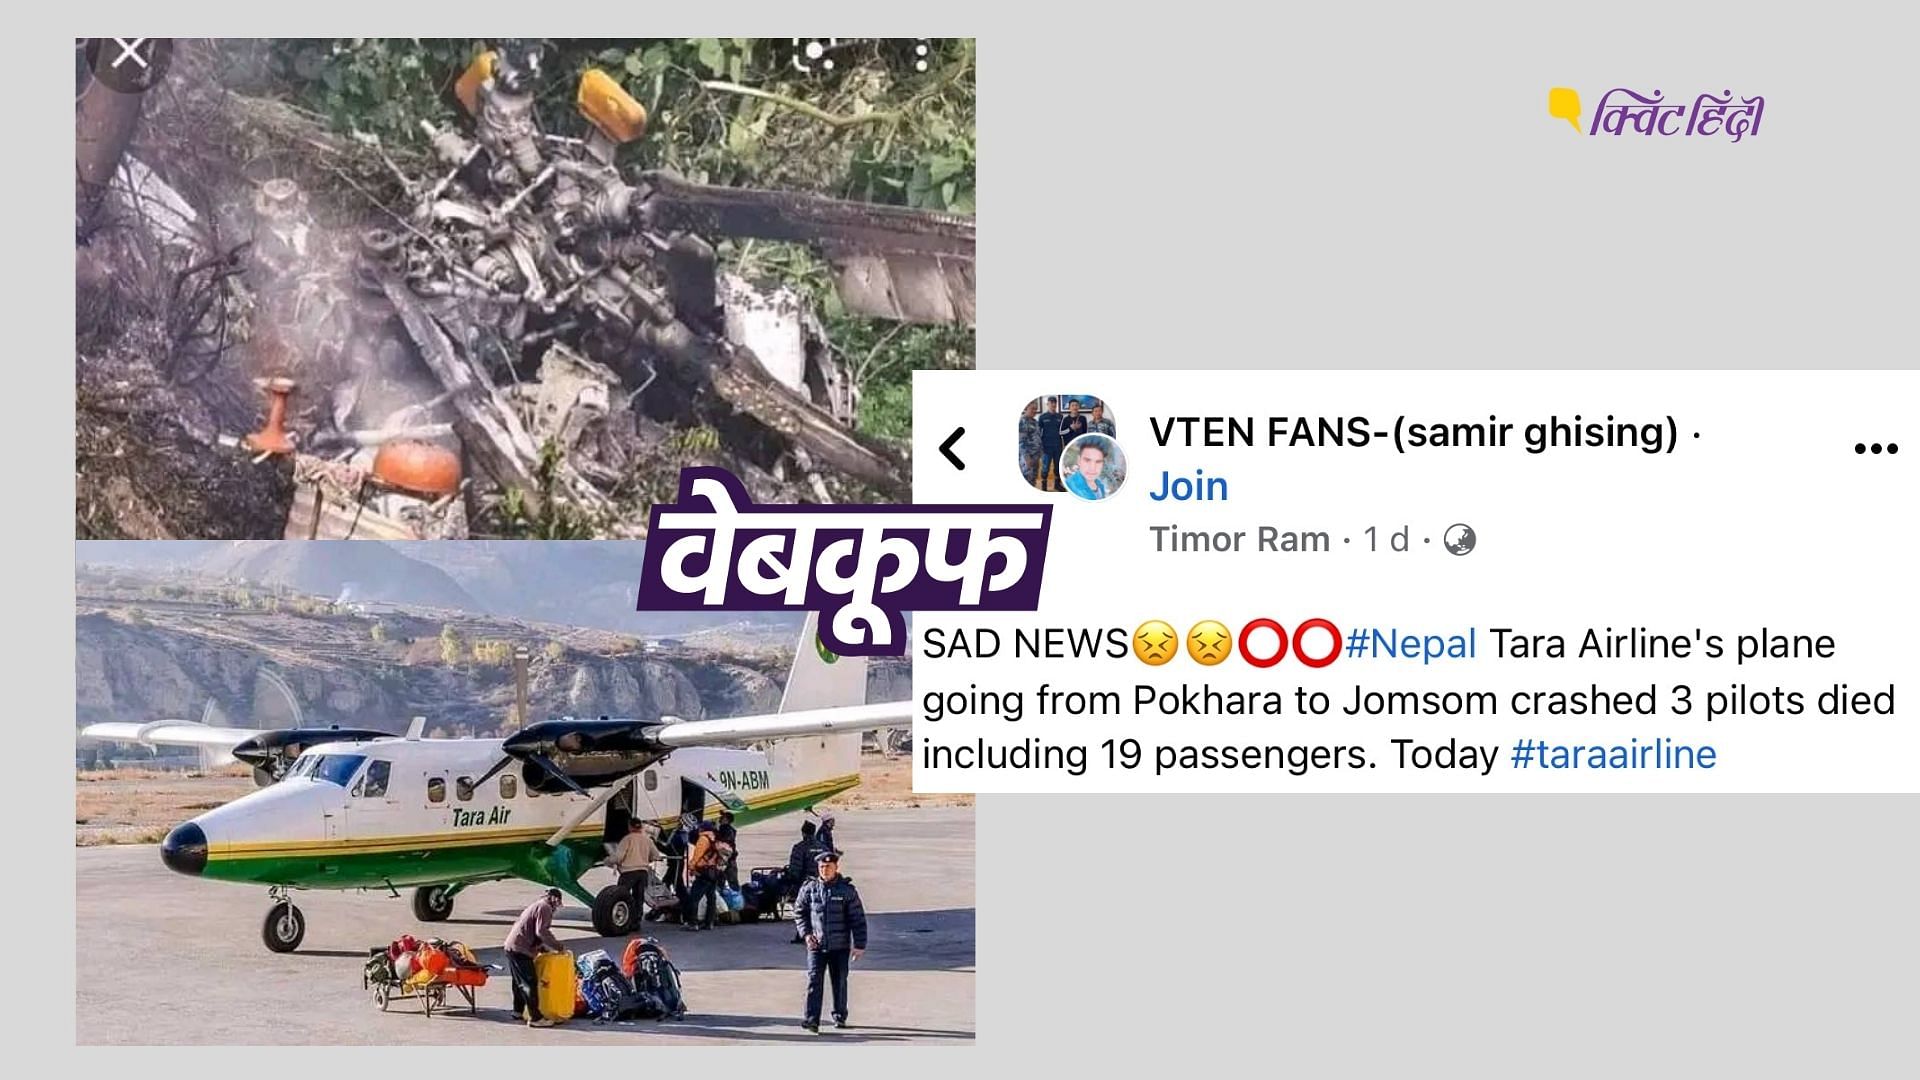 <div class="paragraphs"><p>नेपाल एयर क्रैश की बताकर ये 2 तस्वीरें शेयर हो रही हैं&nbsp;</p></div>